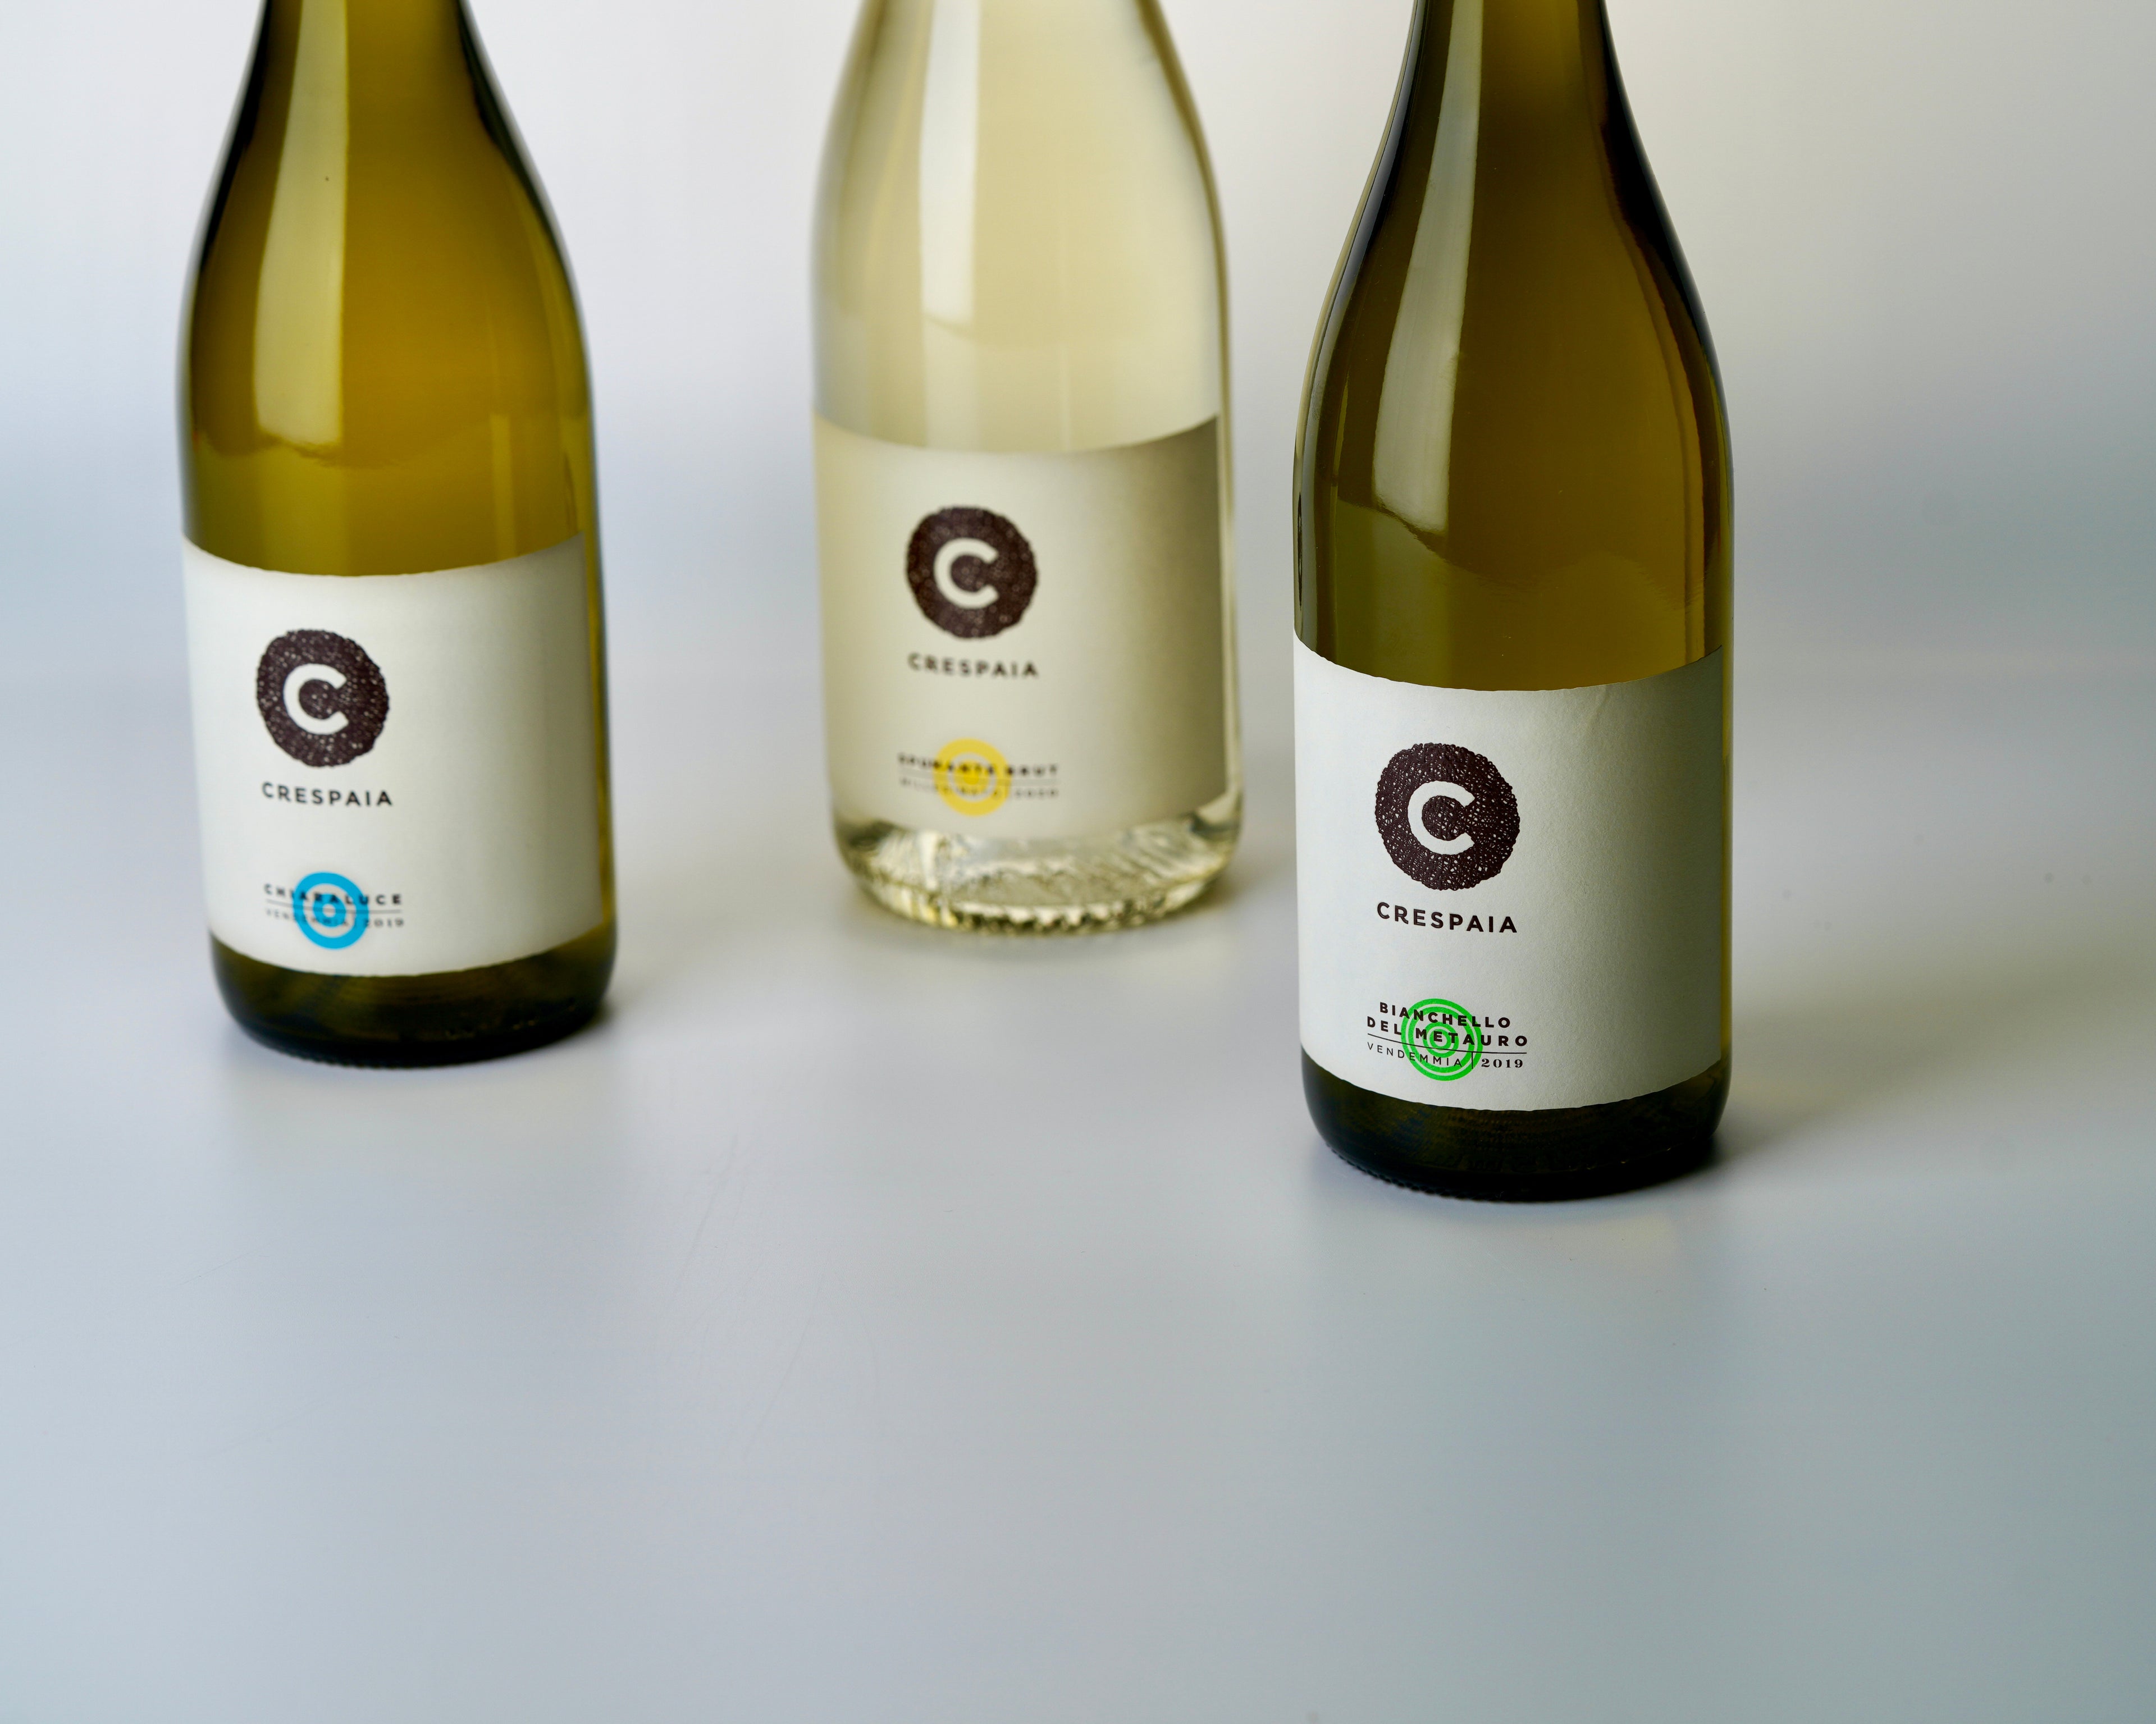 Crespaia e i suoi vini biologici: in foto sono mostrate le 3 etichette di vino bianco biologico di Crespaia. Vediamo il Bianchello del Metauro DOC tradizionale, Chiaraluce (Bianchello del Metauro DOC Superiore) e infine Spumante Brut, la bollicina.